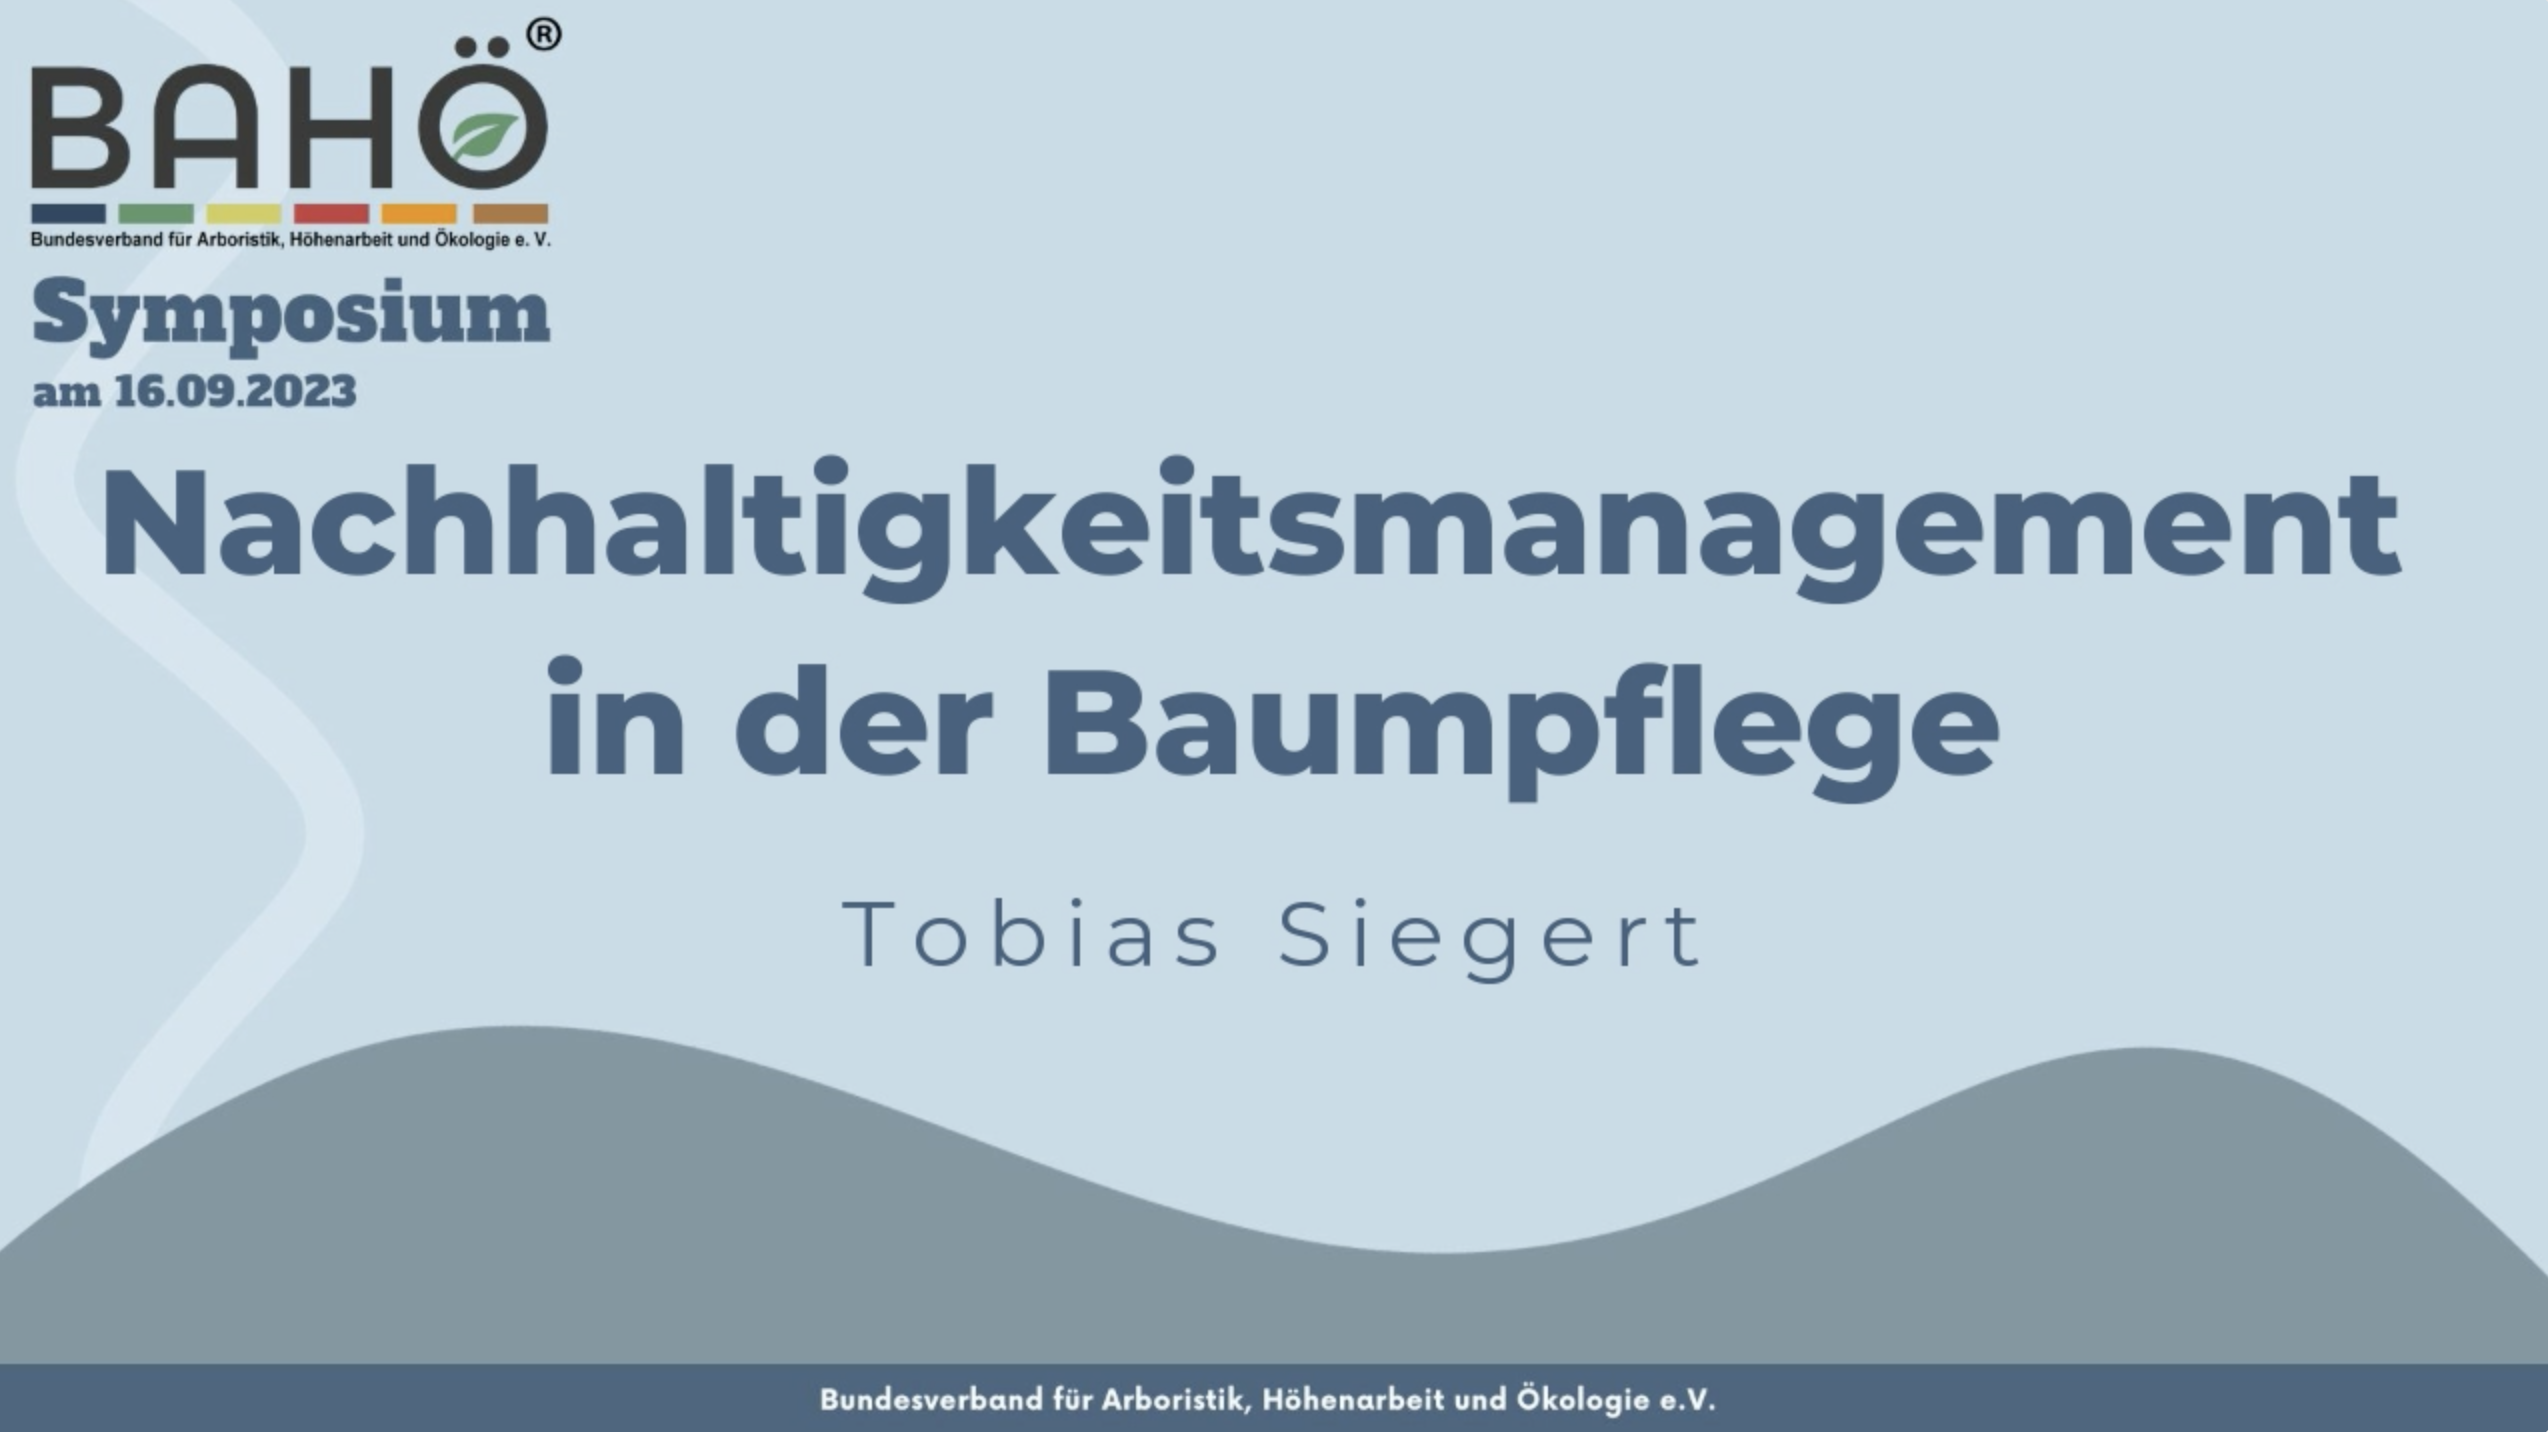 Tobias Siegert - Nachhaltigkeitsmanagement in der Baumpflege